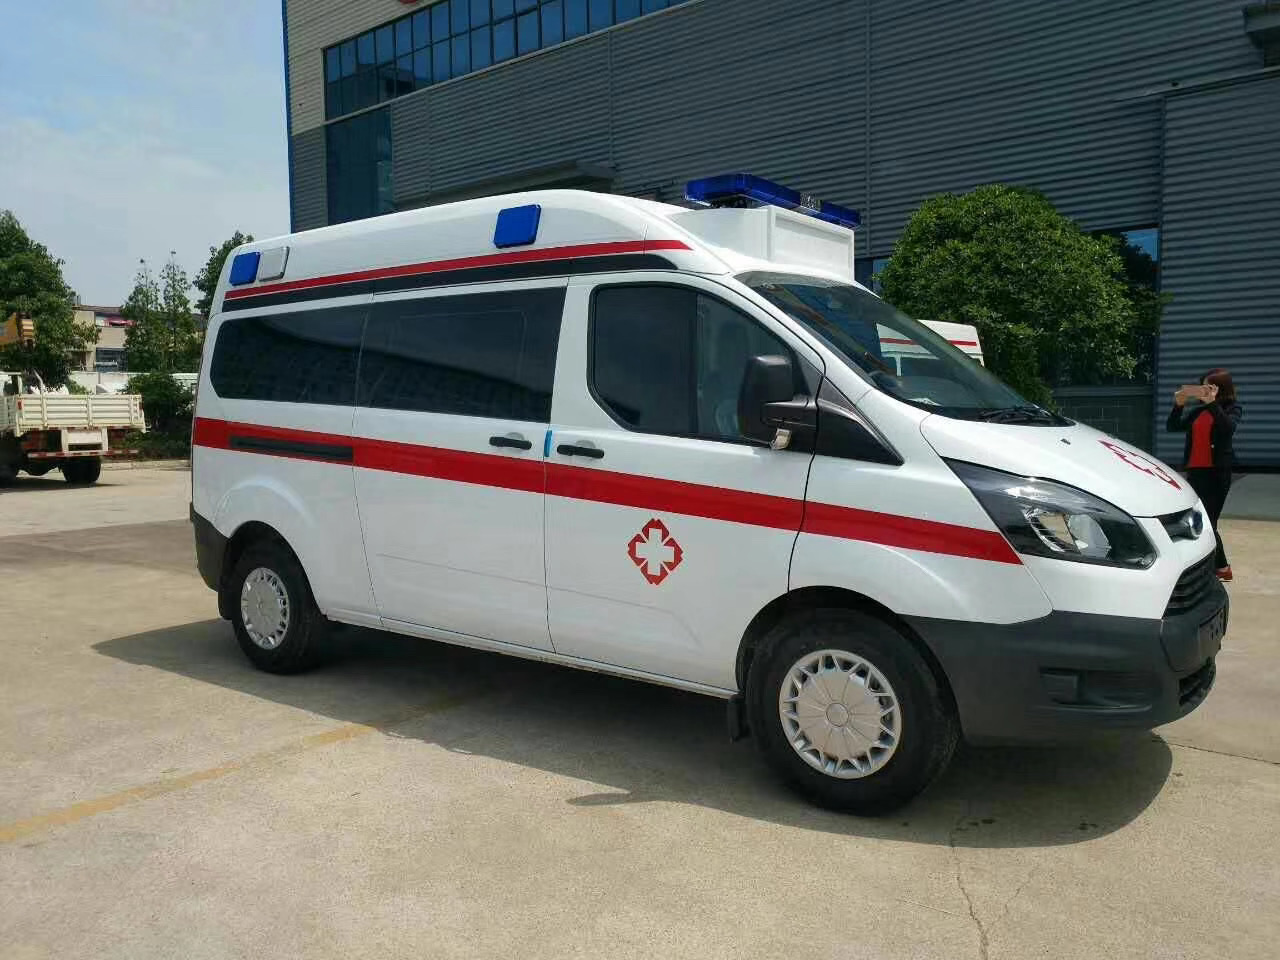 惠水县出院转院救护车